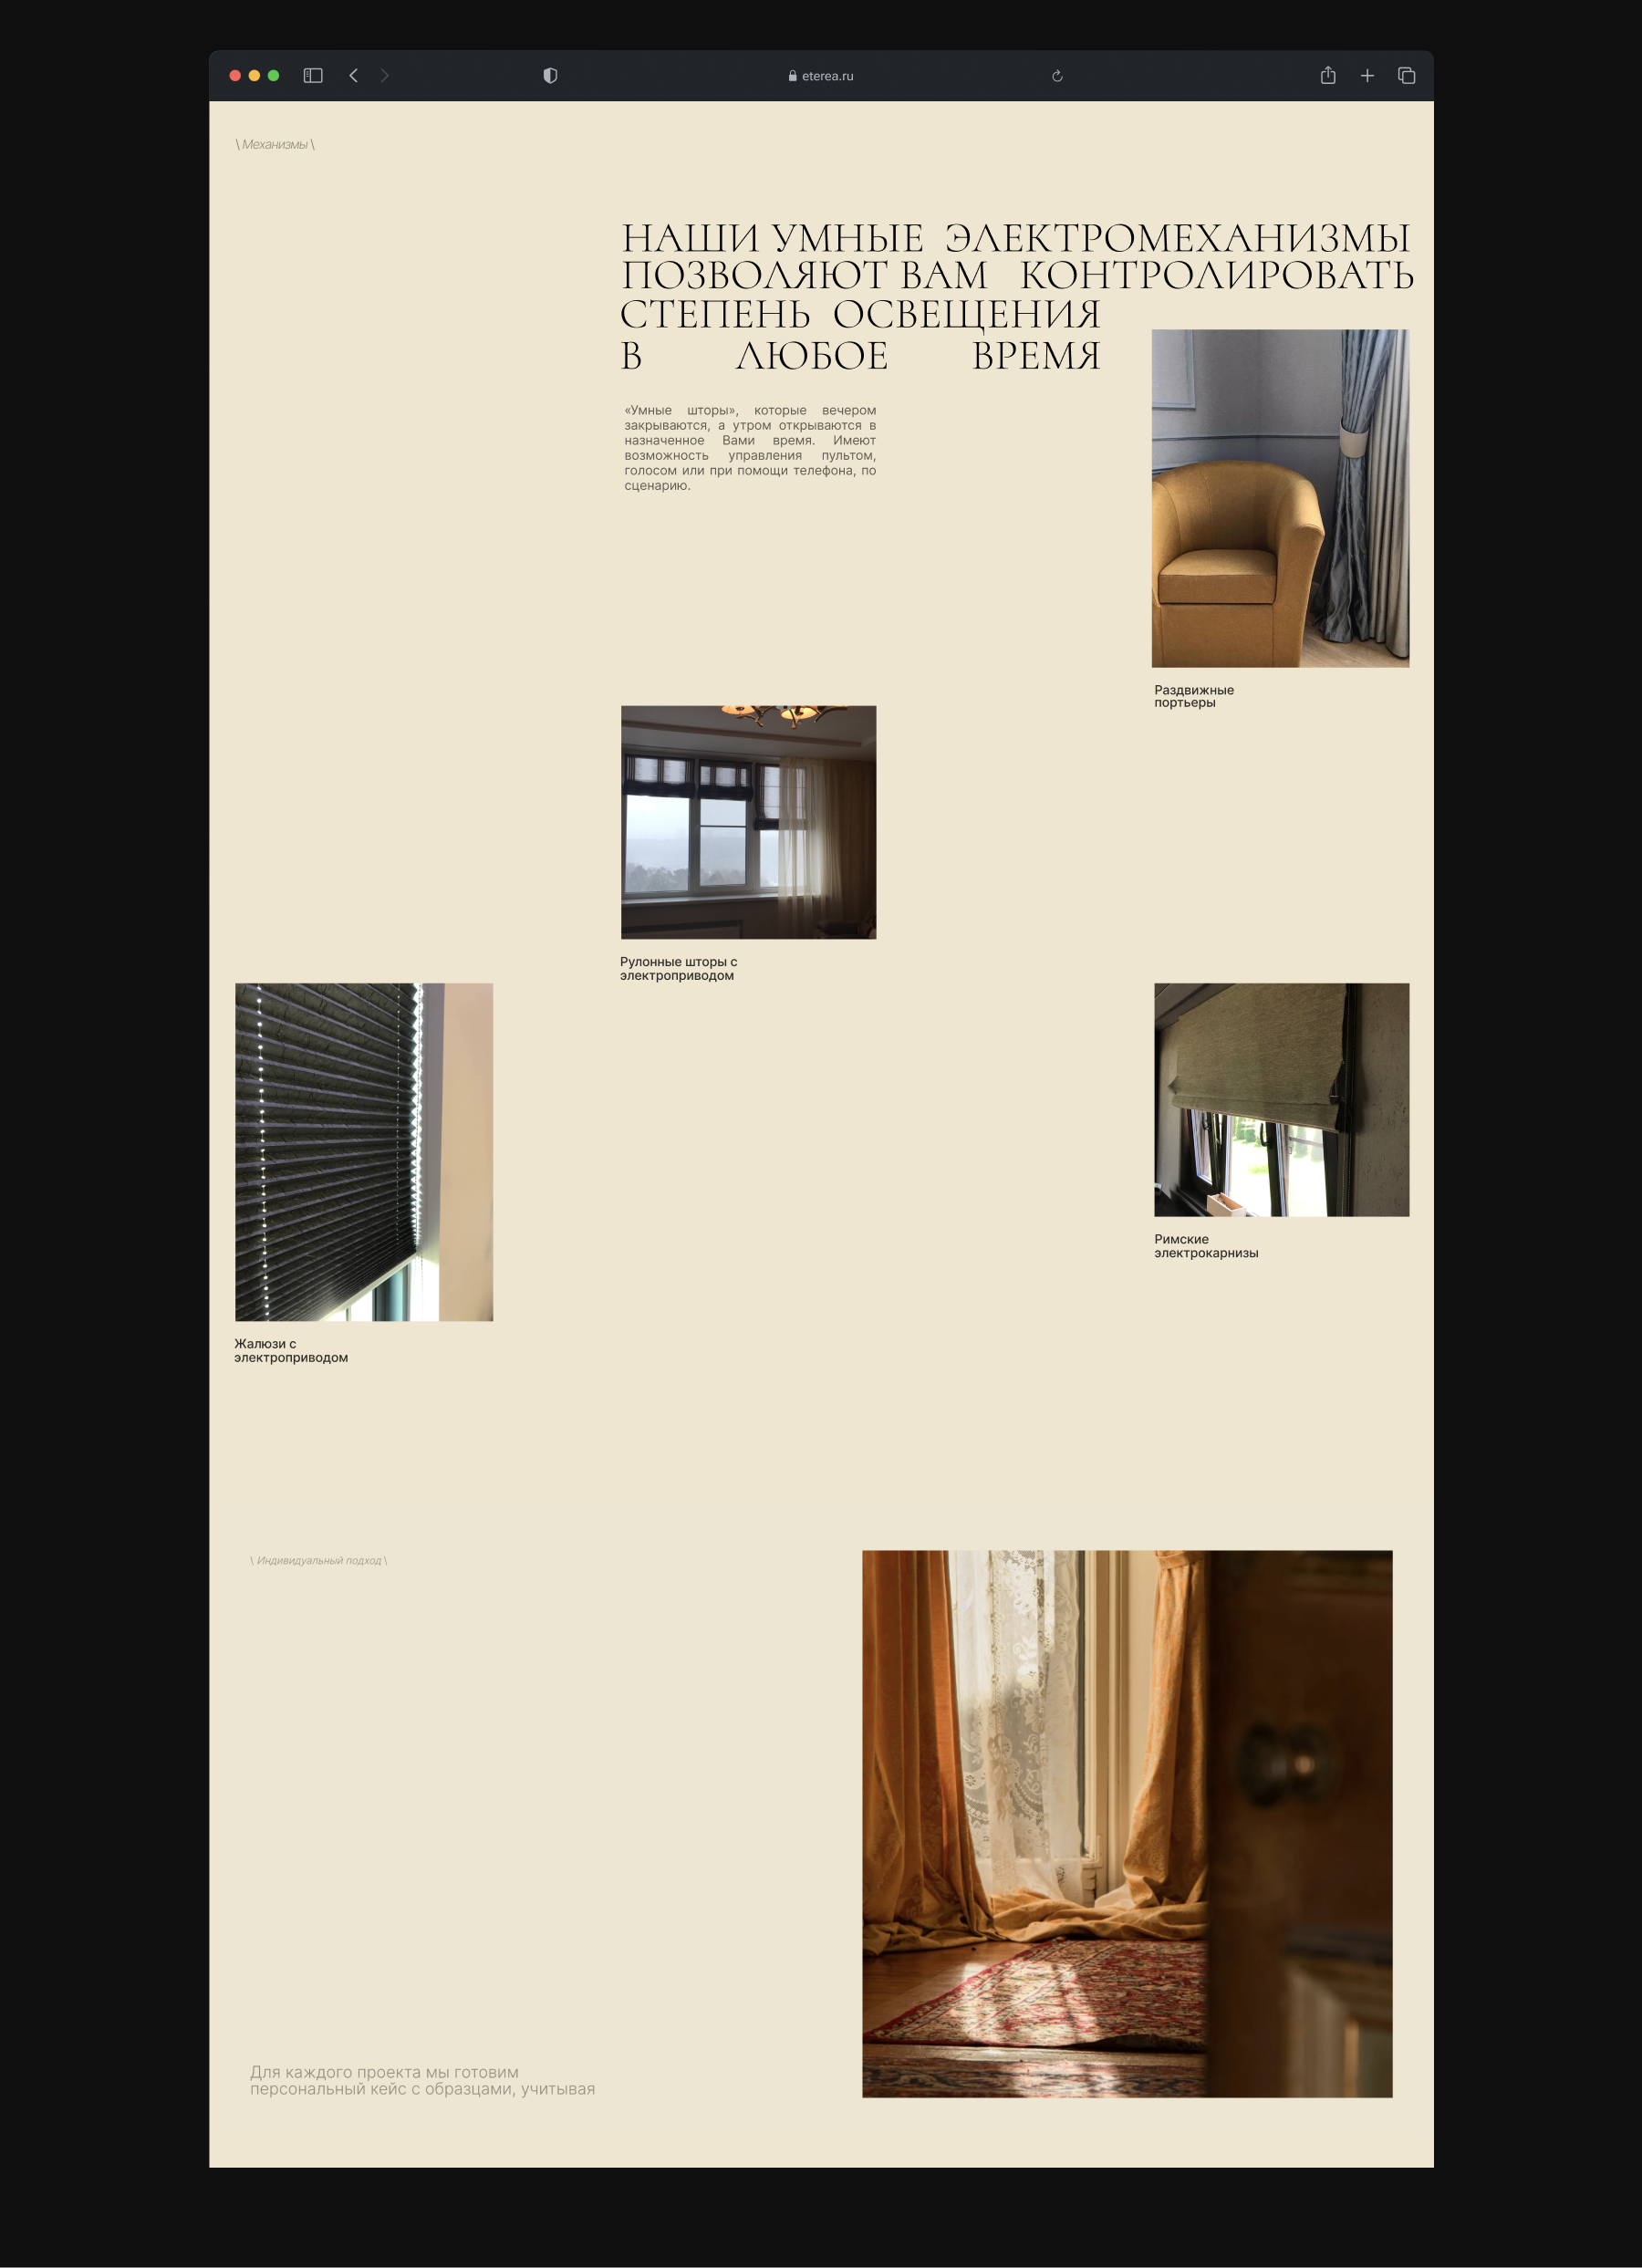 Eterea. Текстильный дизайн интерьера — Изображение №6 — Интерфейсы, Анимация на Dprofile